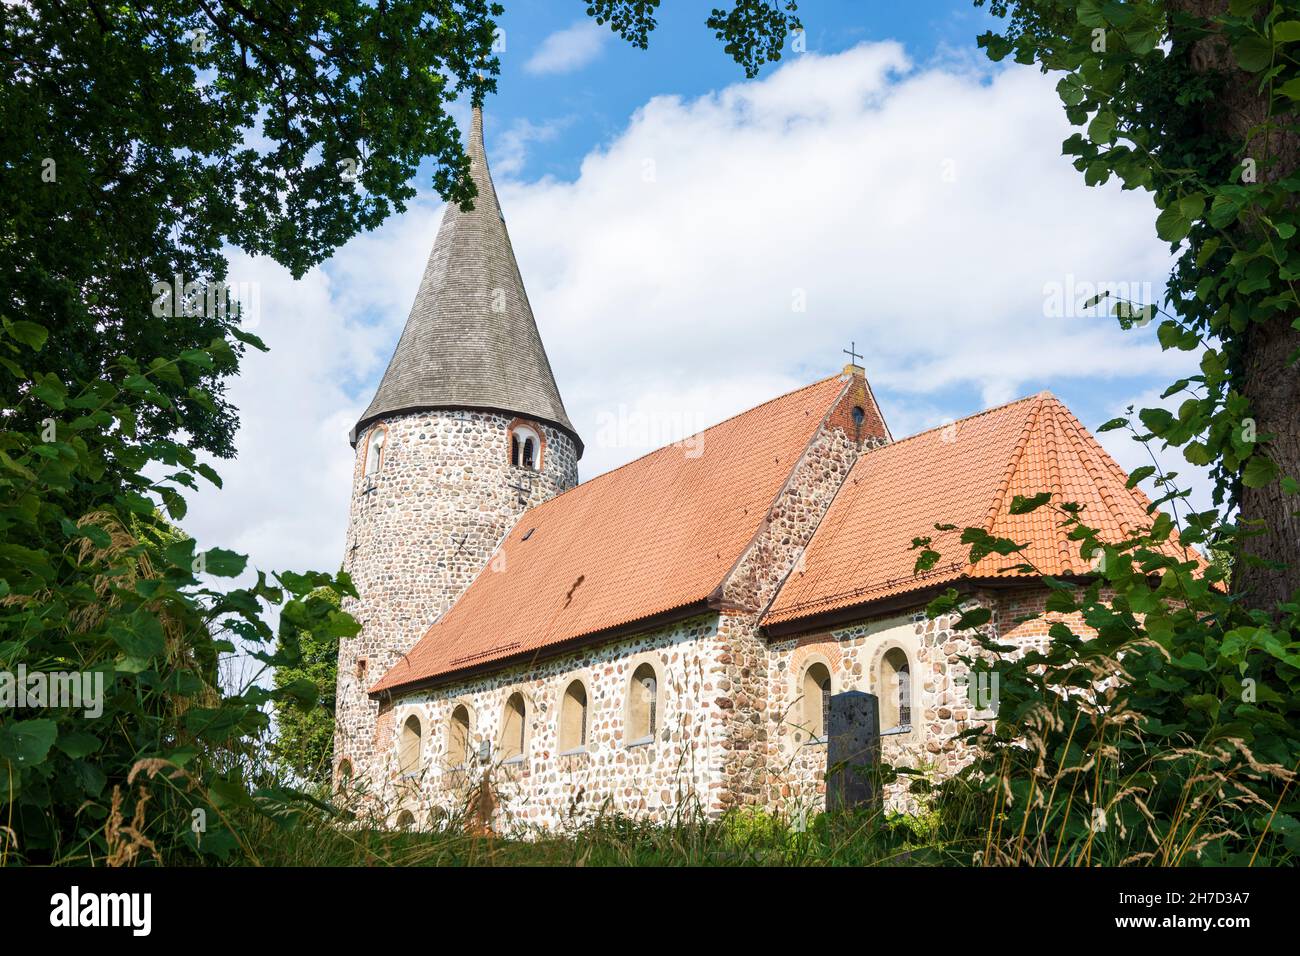 Ratekau : église en pierre de champ de Ratekau à Ostsee (mer Baltique), Schleswig-Holstein, Allemagne Banque D'Images